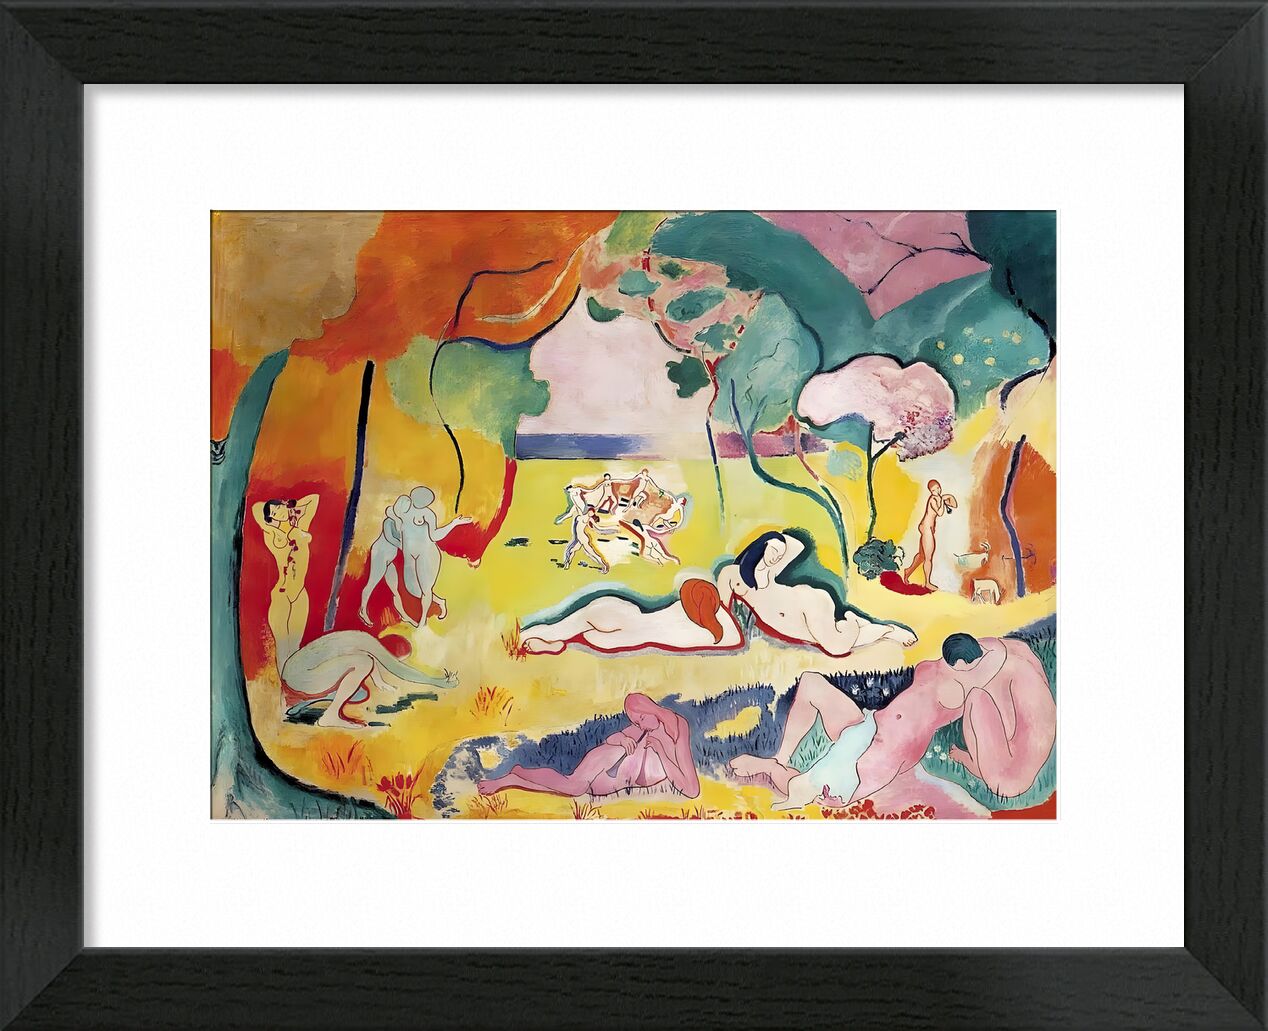 Die Freude am Leben - Henri Matisse von Bildende Kunst, Prodi Art, Matisse, Henri Matisse, Malerei, Glück, Landschaft, Farben